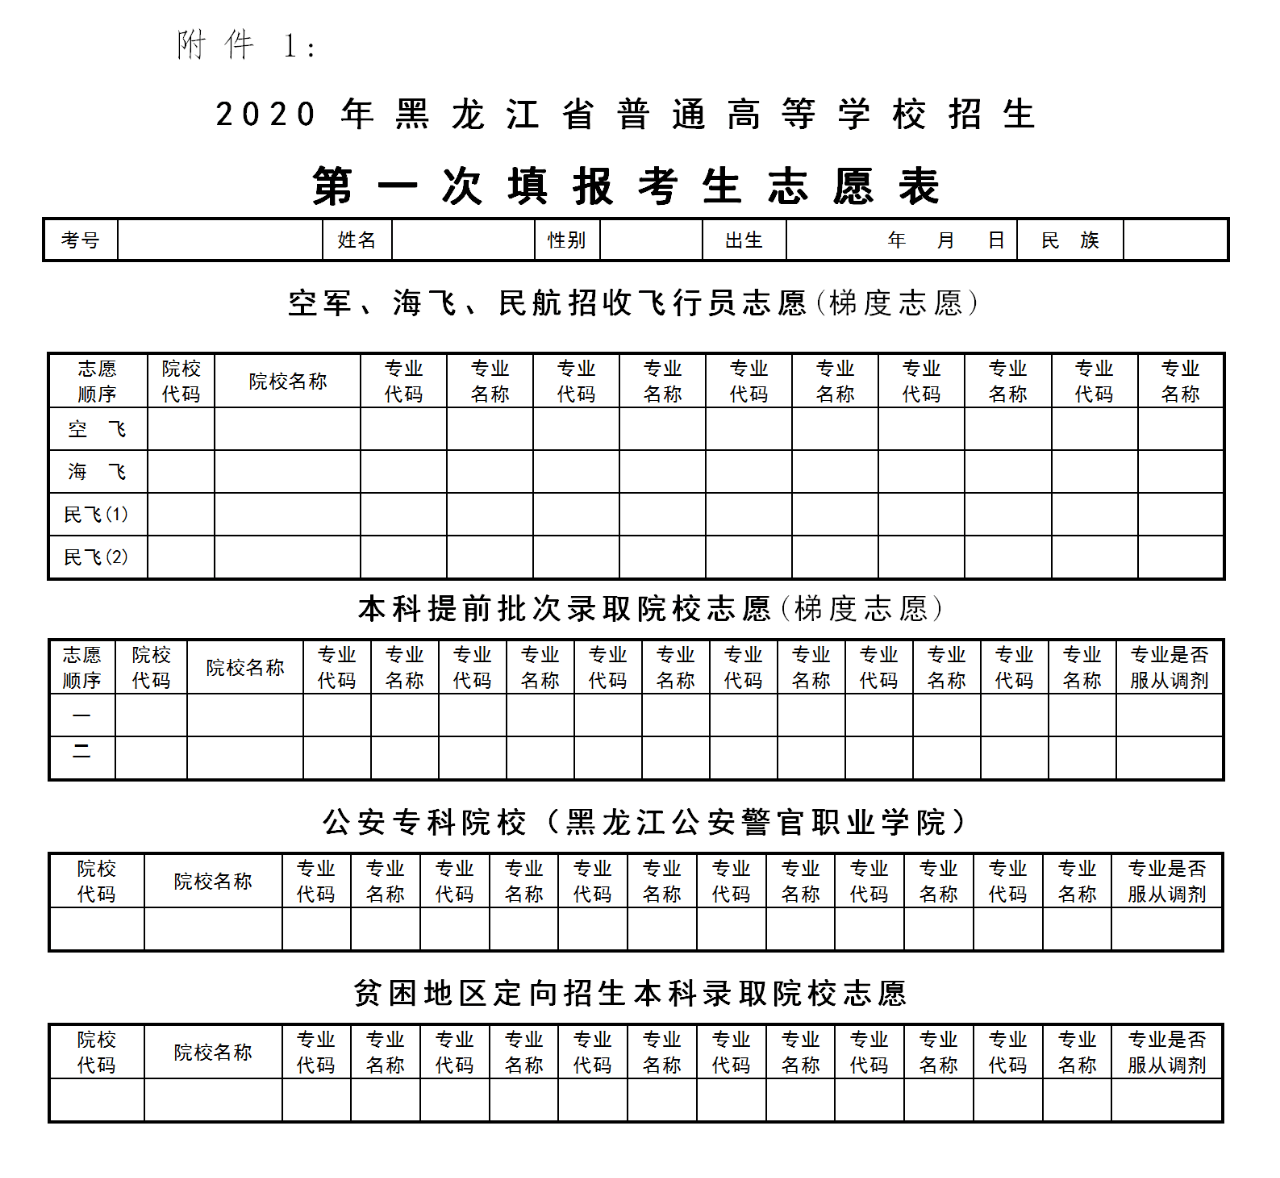 2020黑龙江高考公布成绩及填报志愿时间确定!附填报须知及志愿表